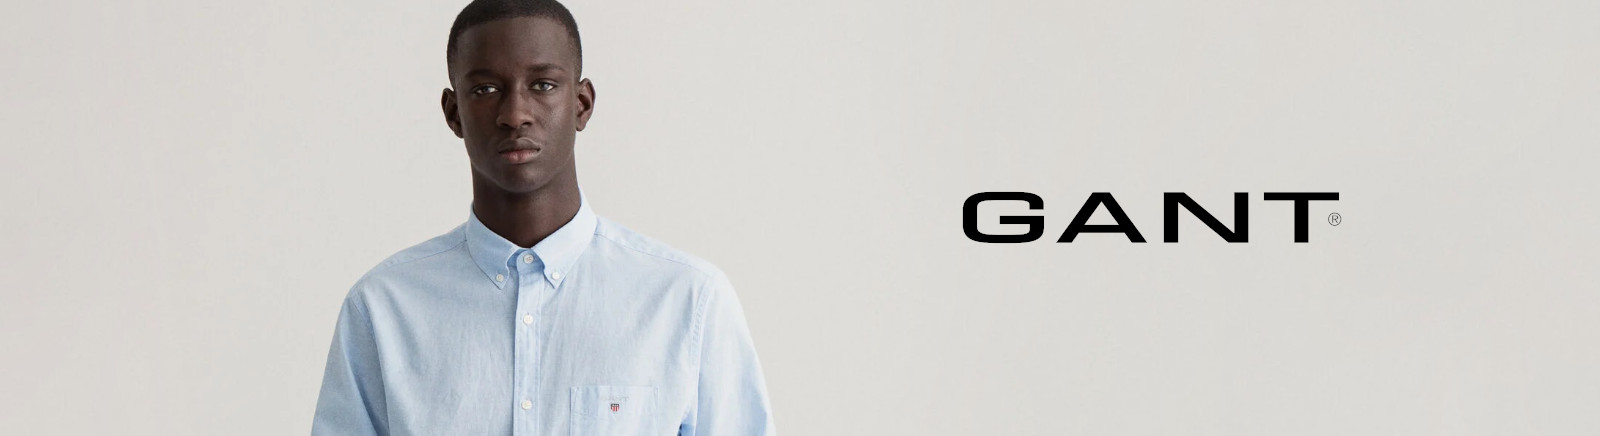 Gant Chelsea Boots für Damen im Online-Shop von GISY kaufen